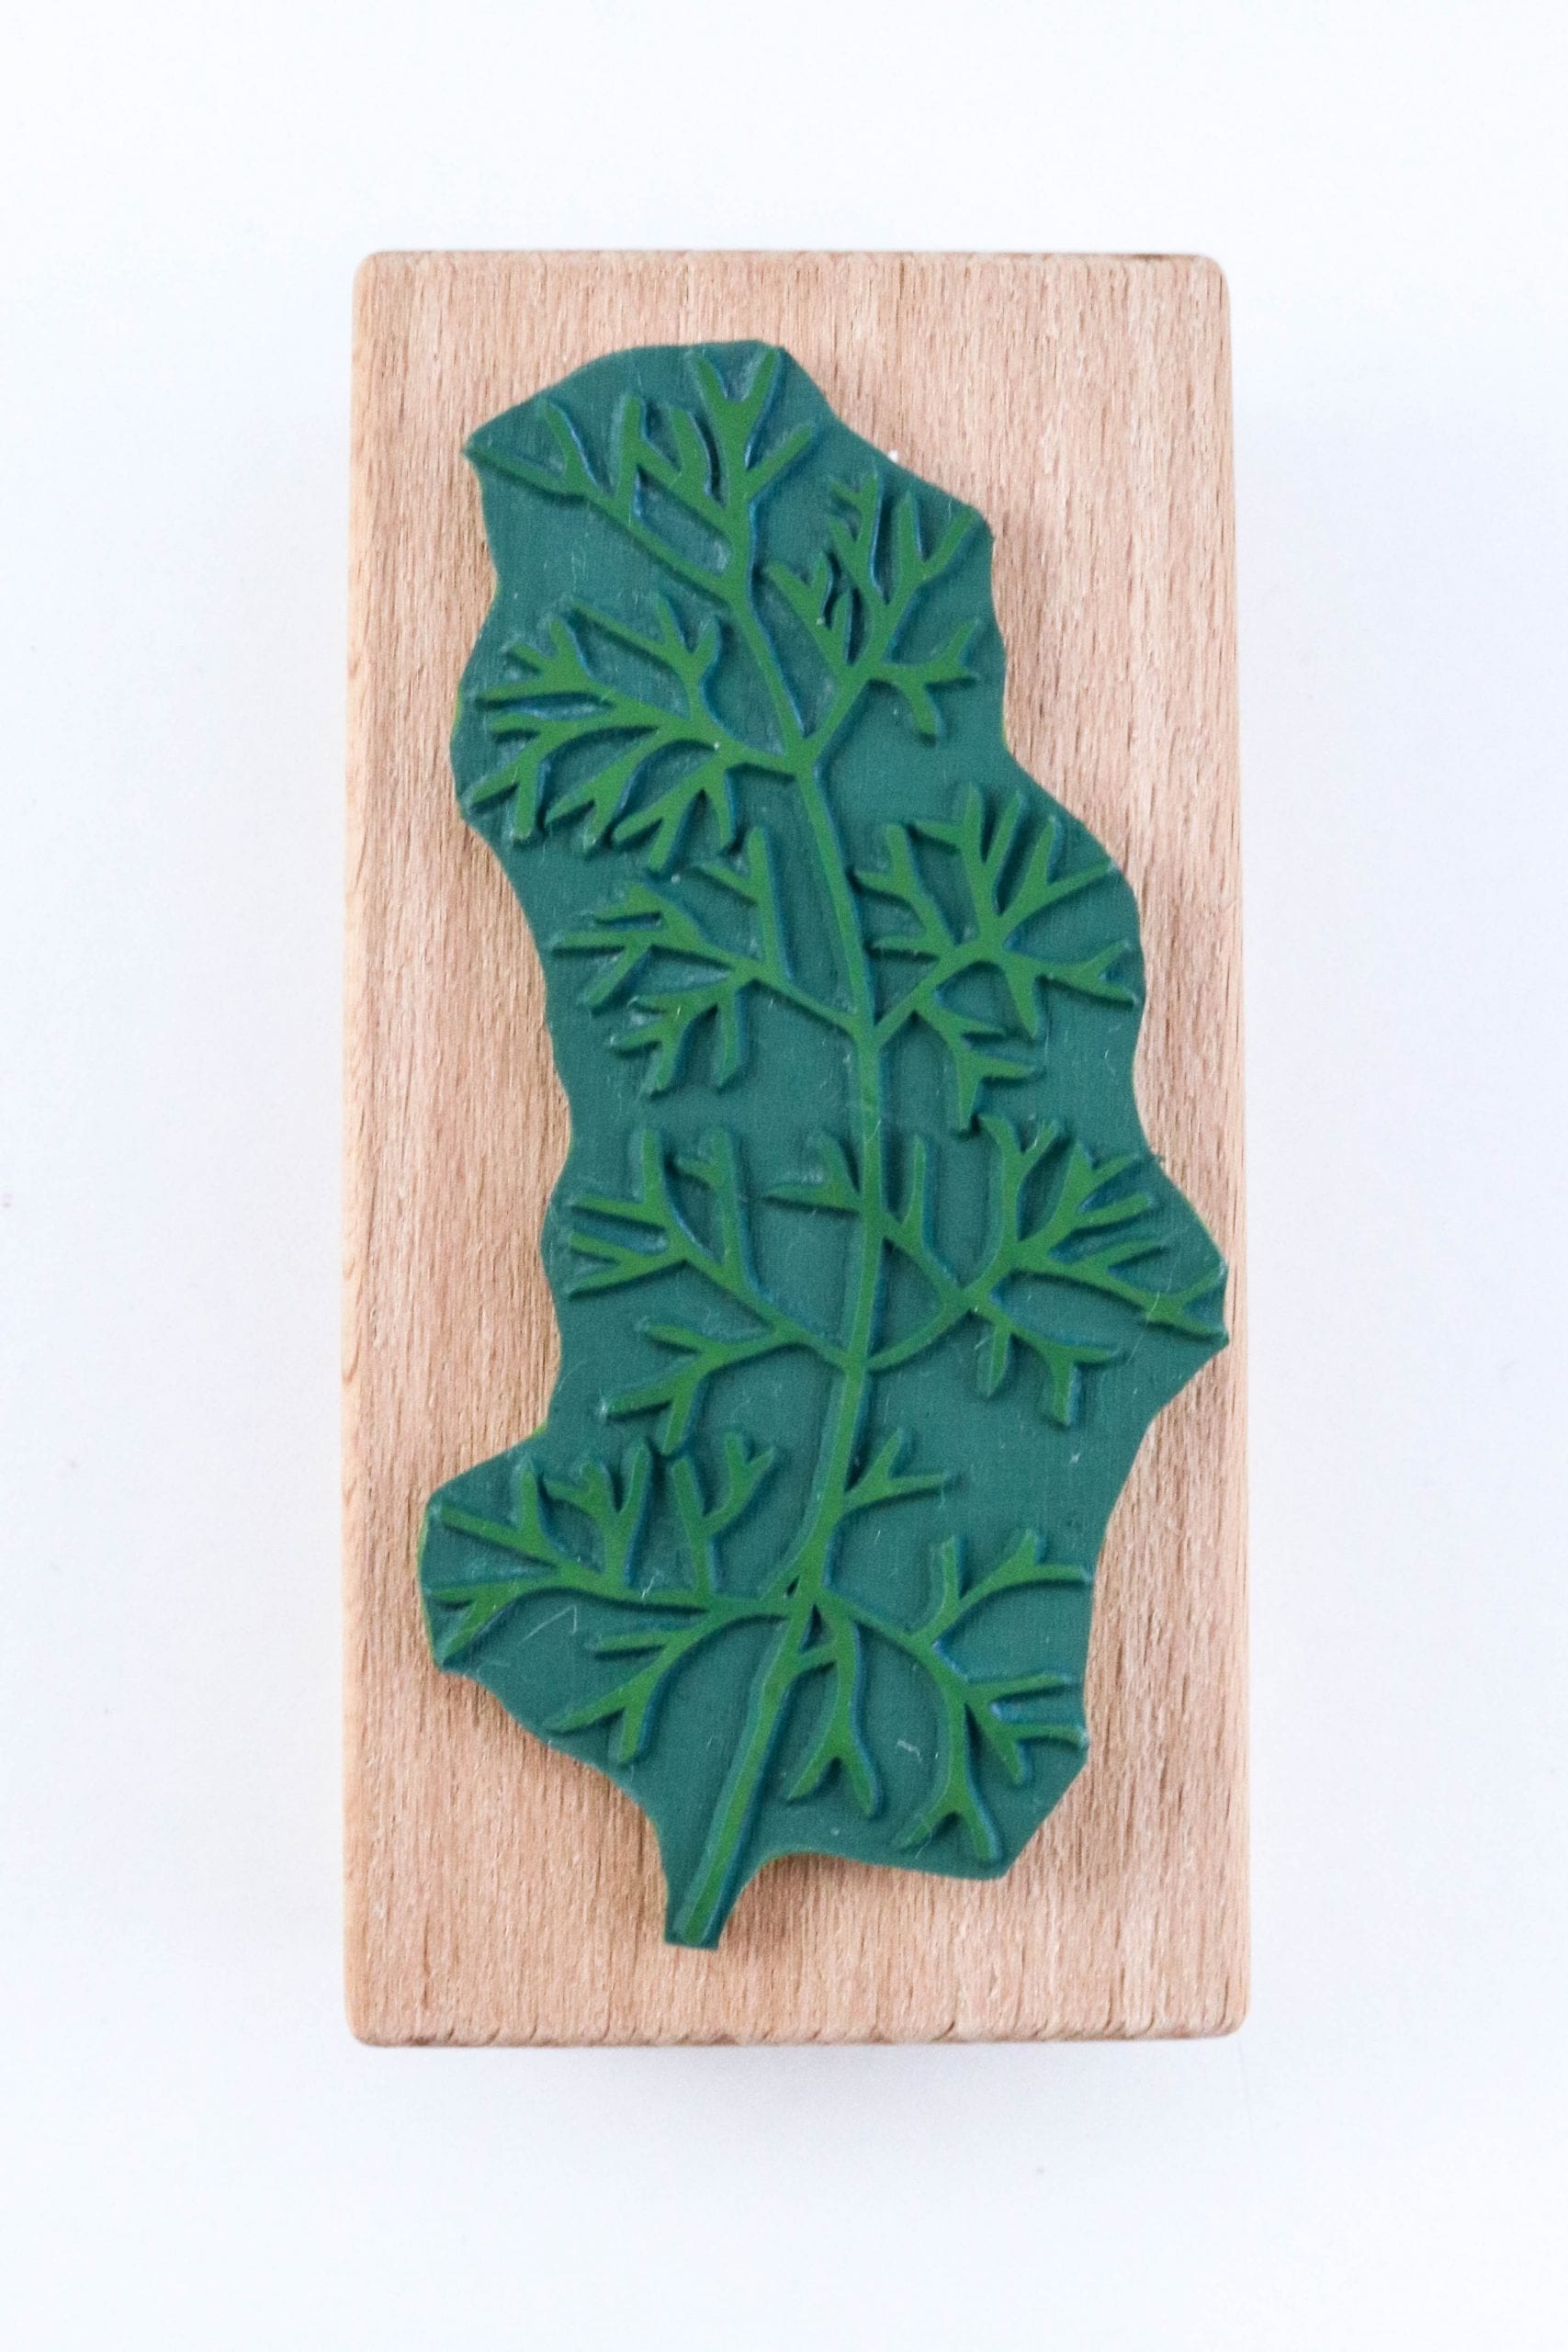 Stempel Unterwasserpflanze #03 Seegras Alge | STUDIO KARAMELO